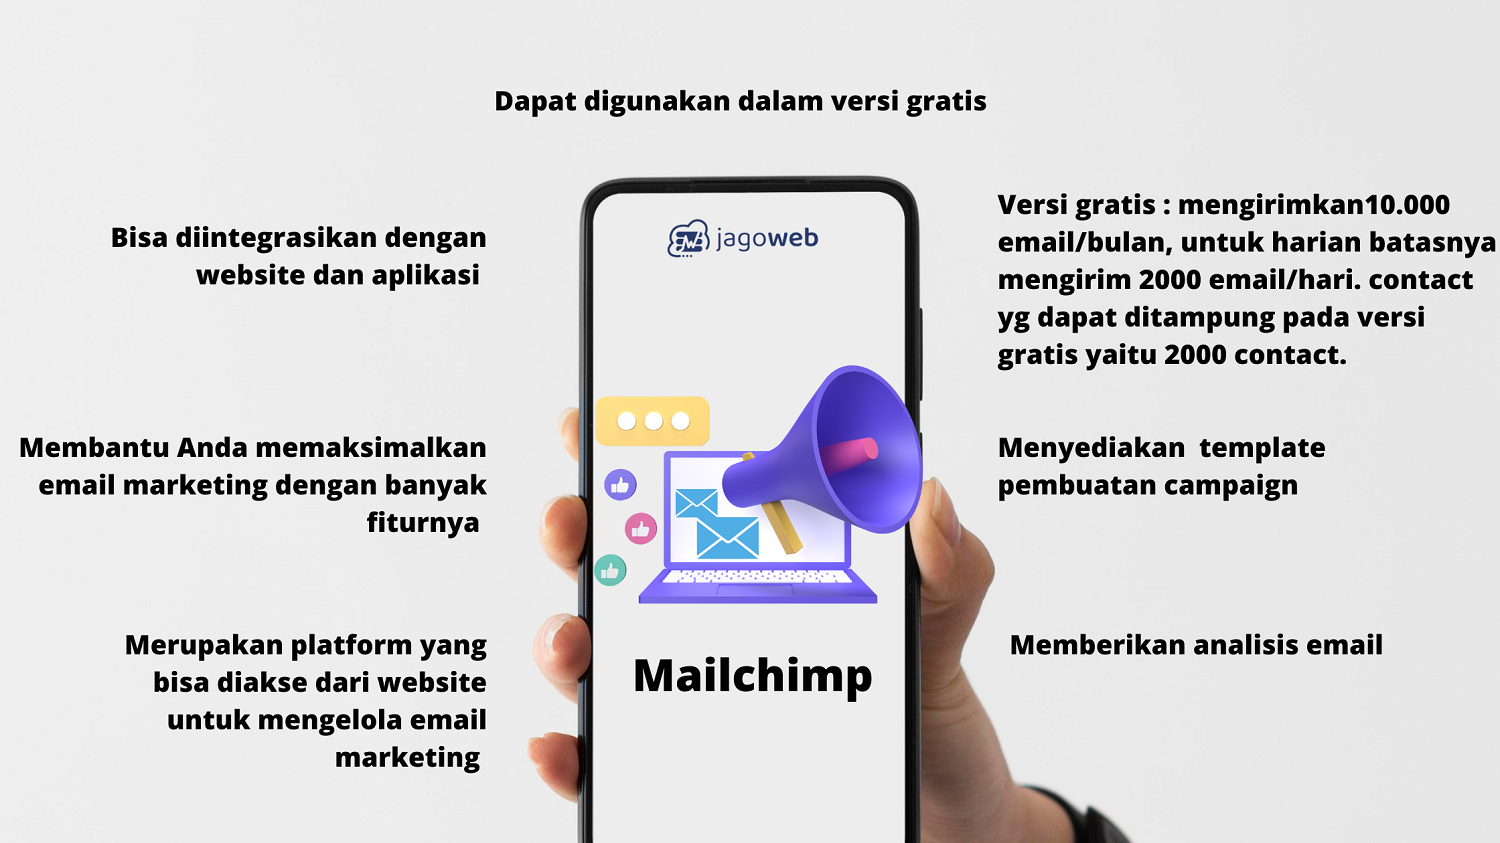 Menggunakan Mailchimp untuk Email Marketing